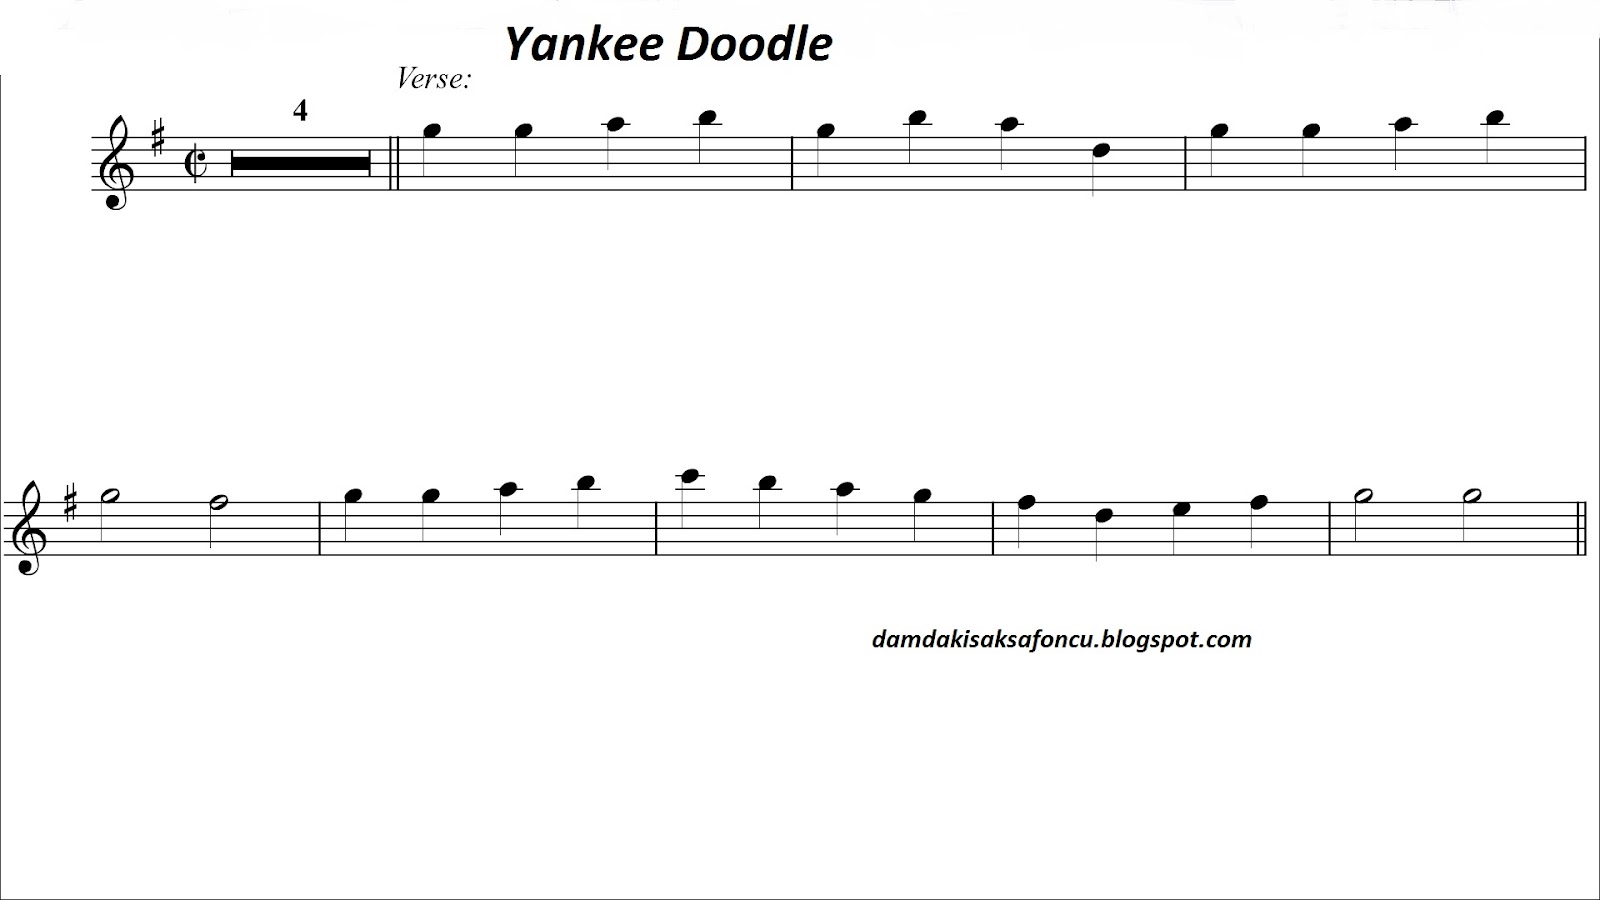 Yankee doodle şarkı ücretsiz indir